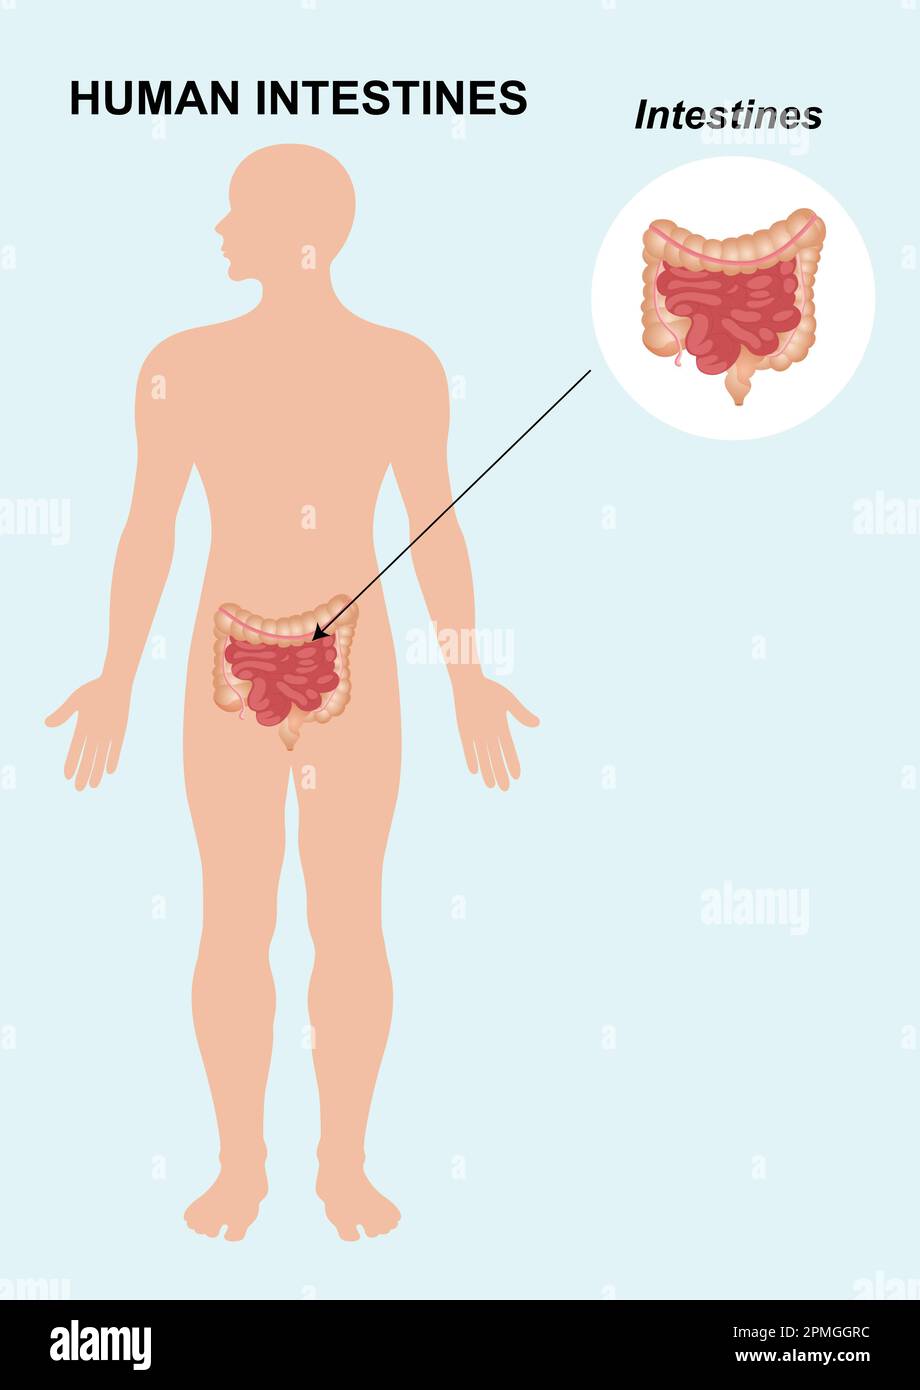 Anatomia dell'intestino umano. L'organo interno umano. Illustrazione vettoriale dell'anatomia dell'organo dell'intestino umano isolata su sfondo bianco. Illustrazione Vettoriale